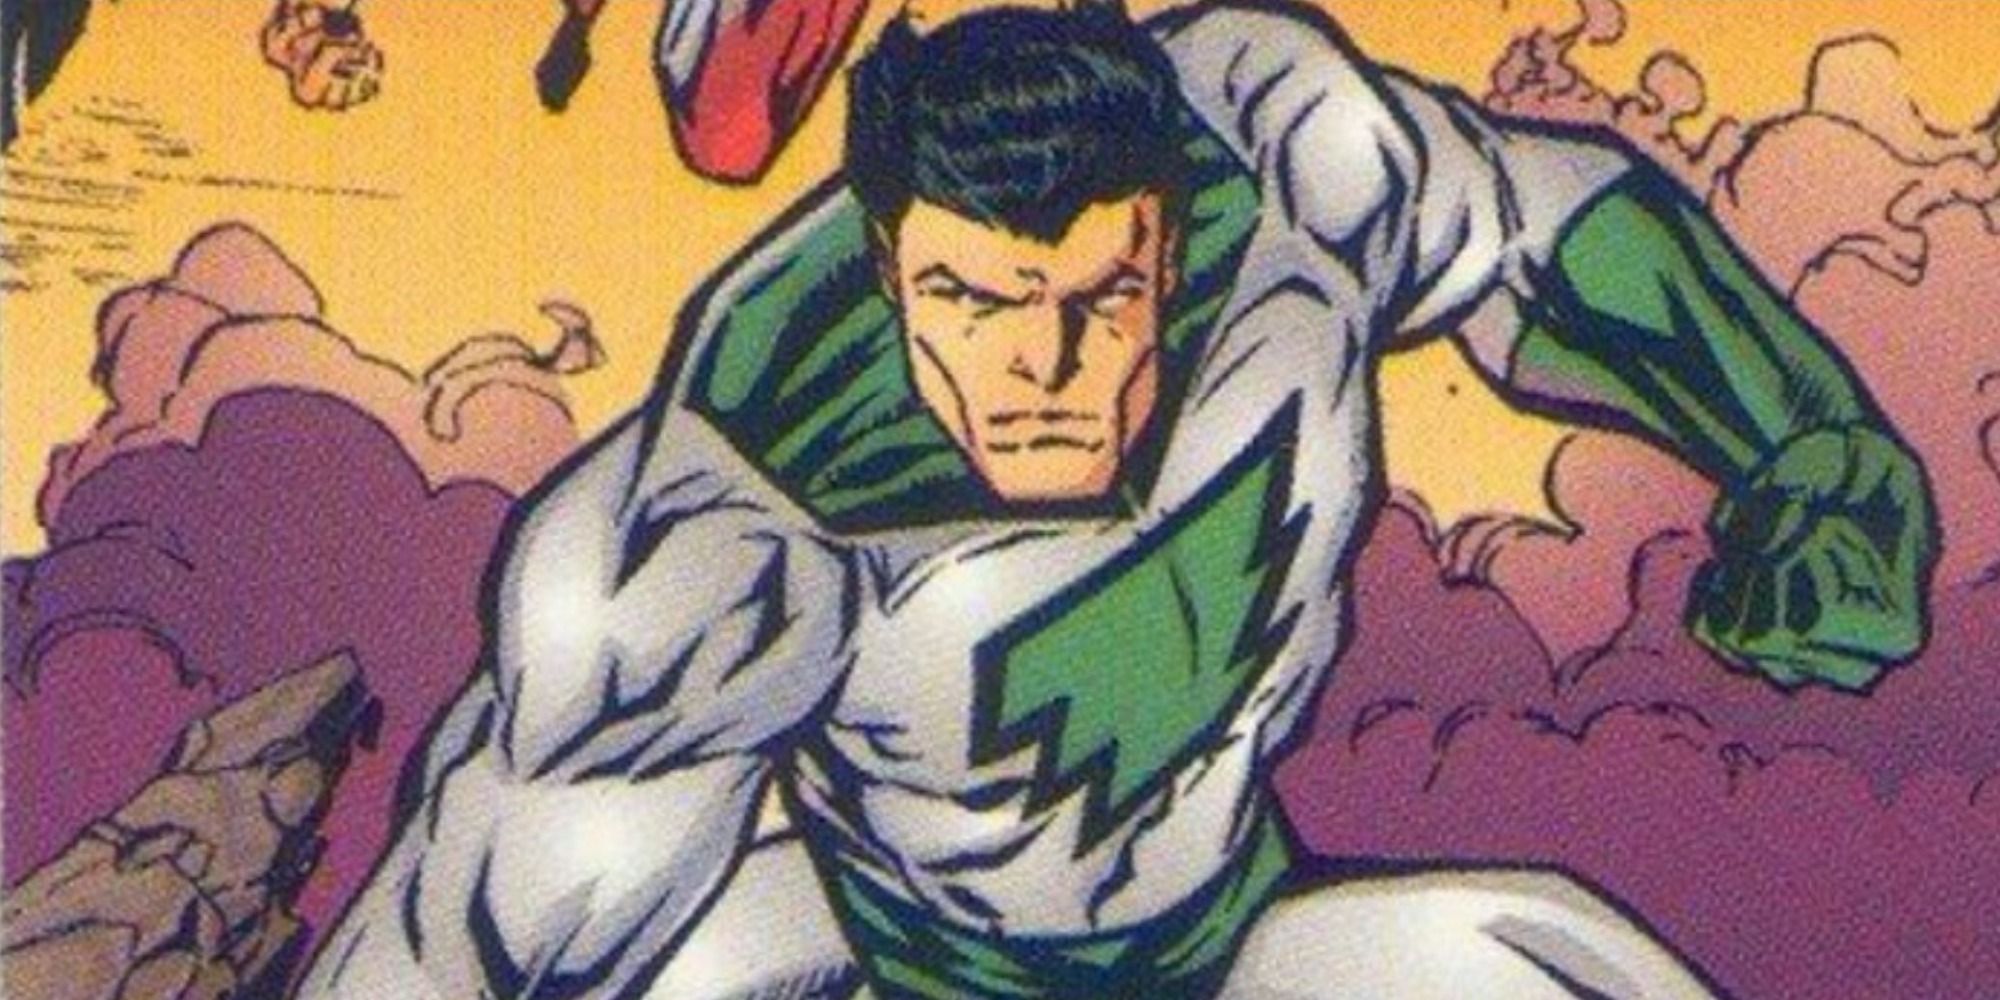 William Mar-Vell uses his powers in Amalgam Comics.